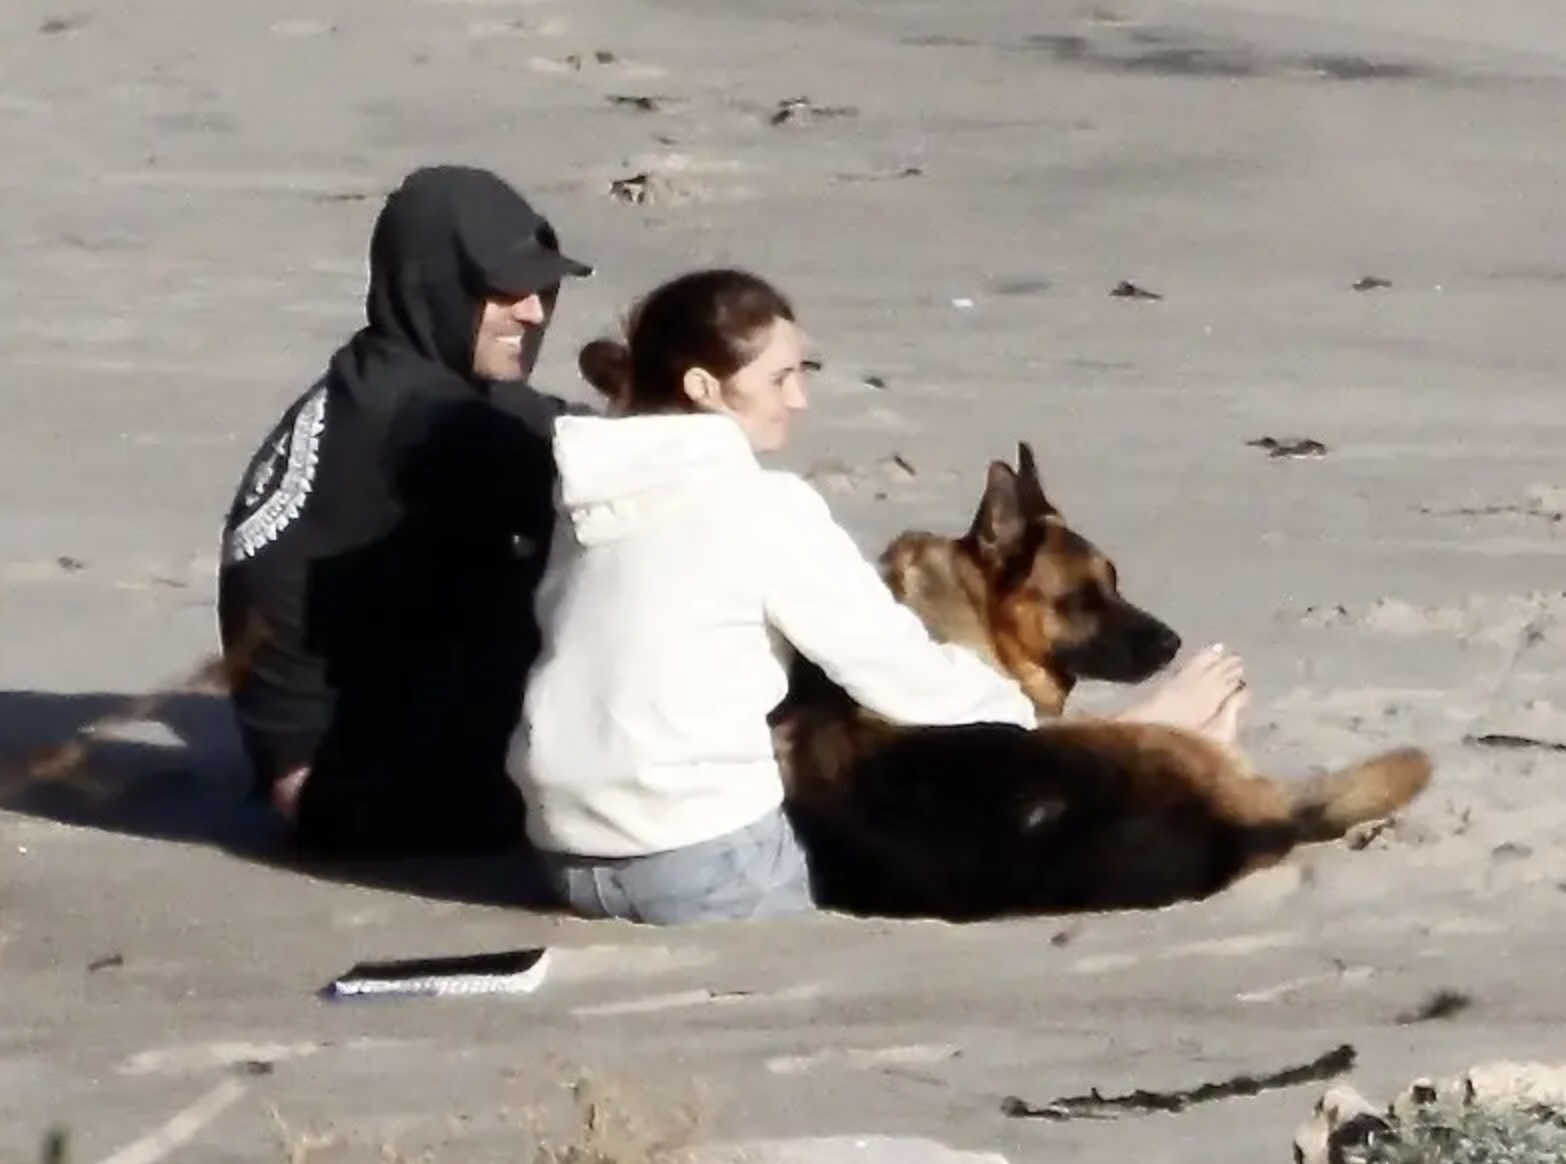 shailene and aaron on the beach with a dog